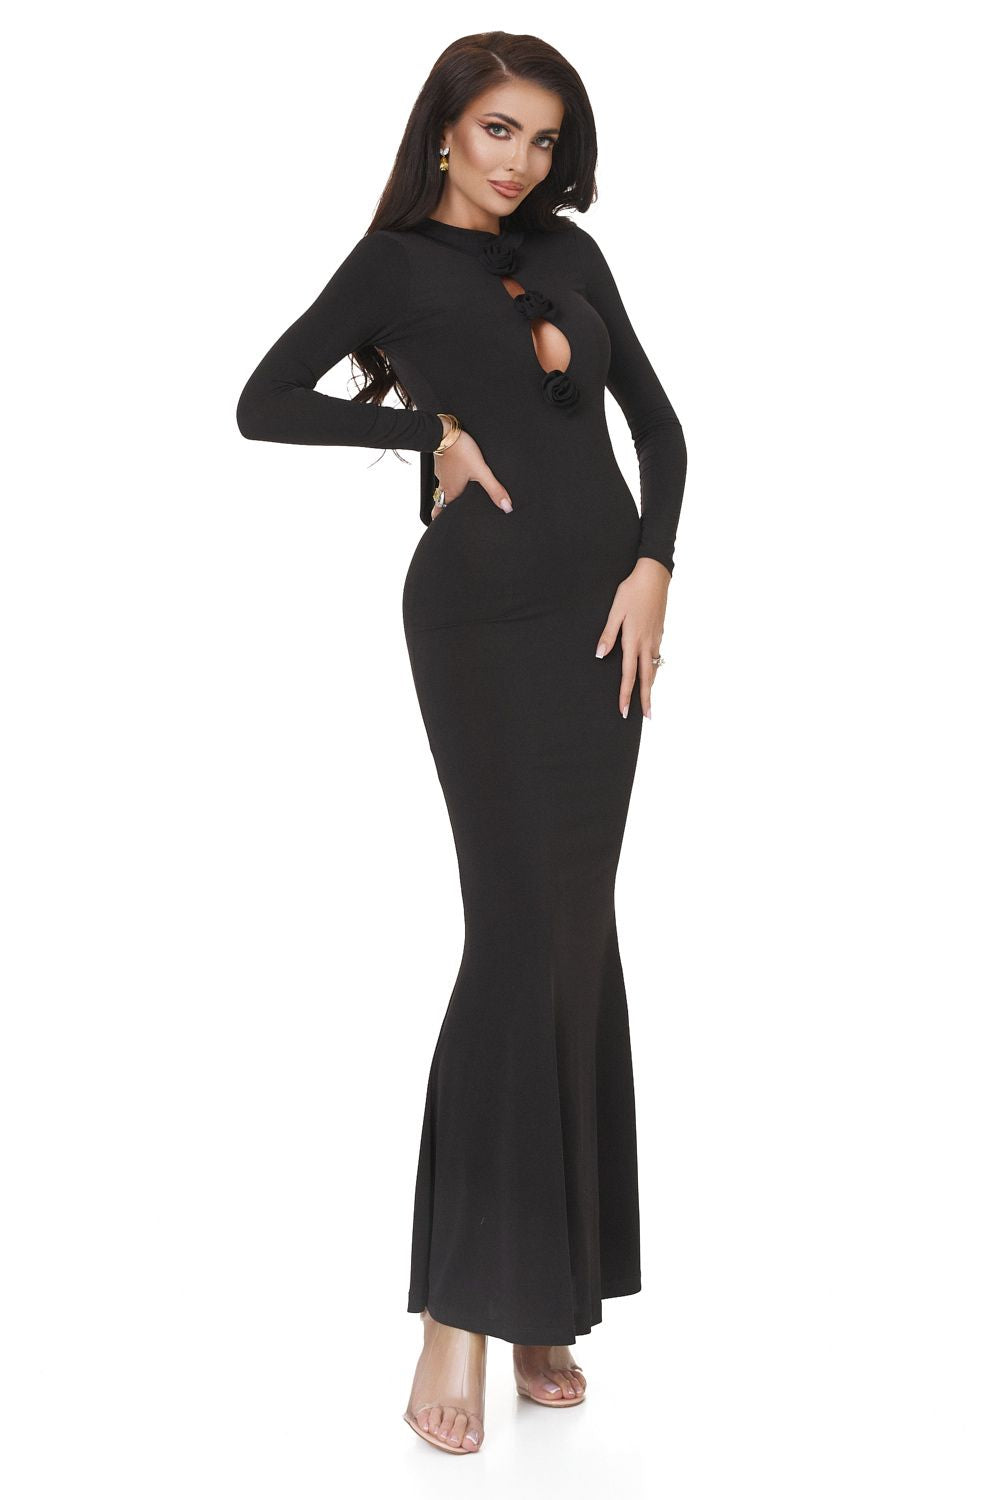 Дамска дълга черна рокля от ликра Glenday Bogas